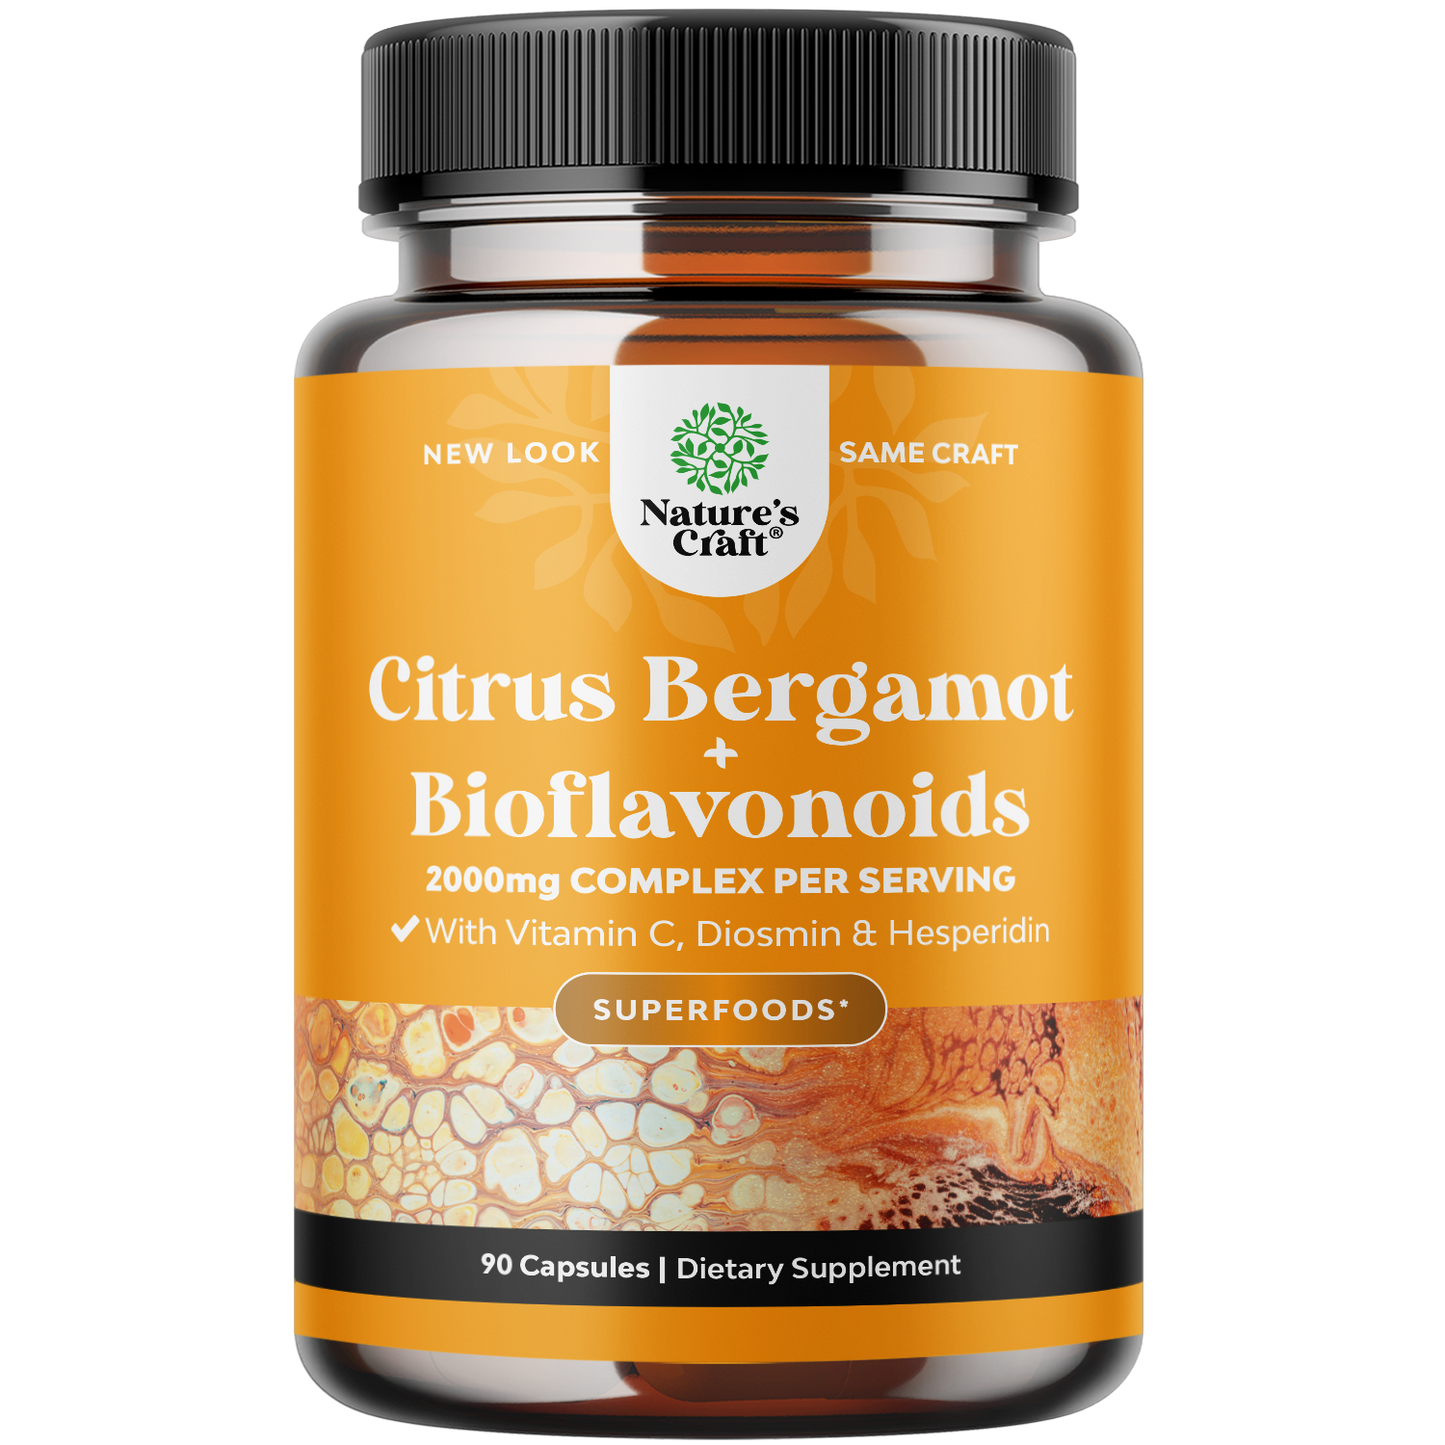 Citrus Bergamot + Bioflavonoids - 90 Capsules